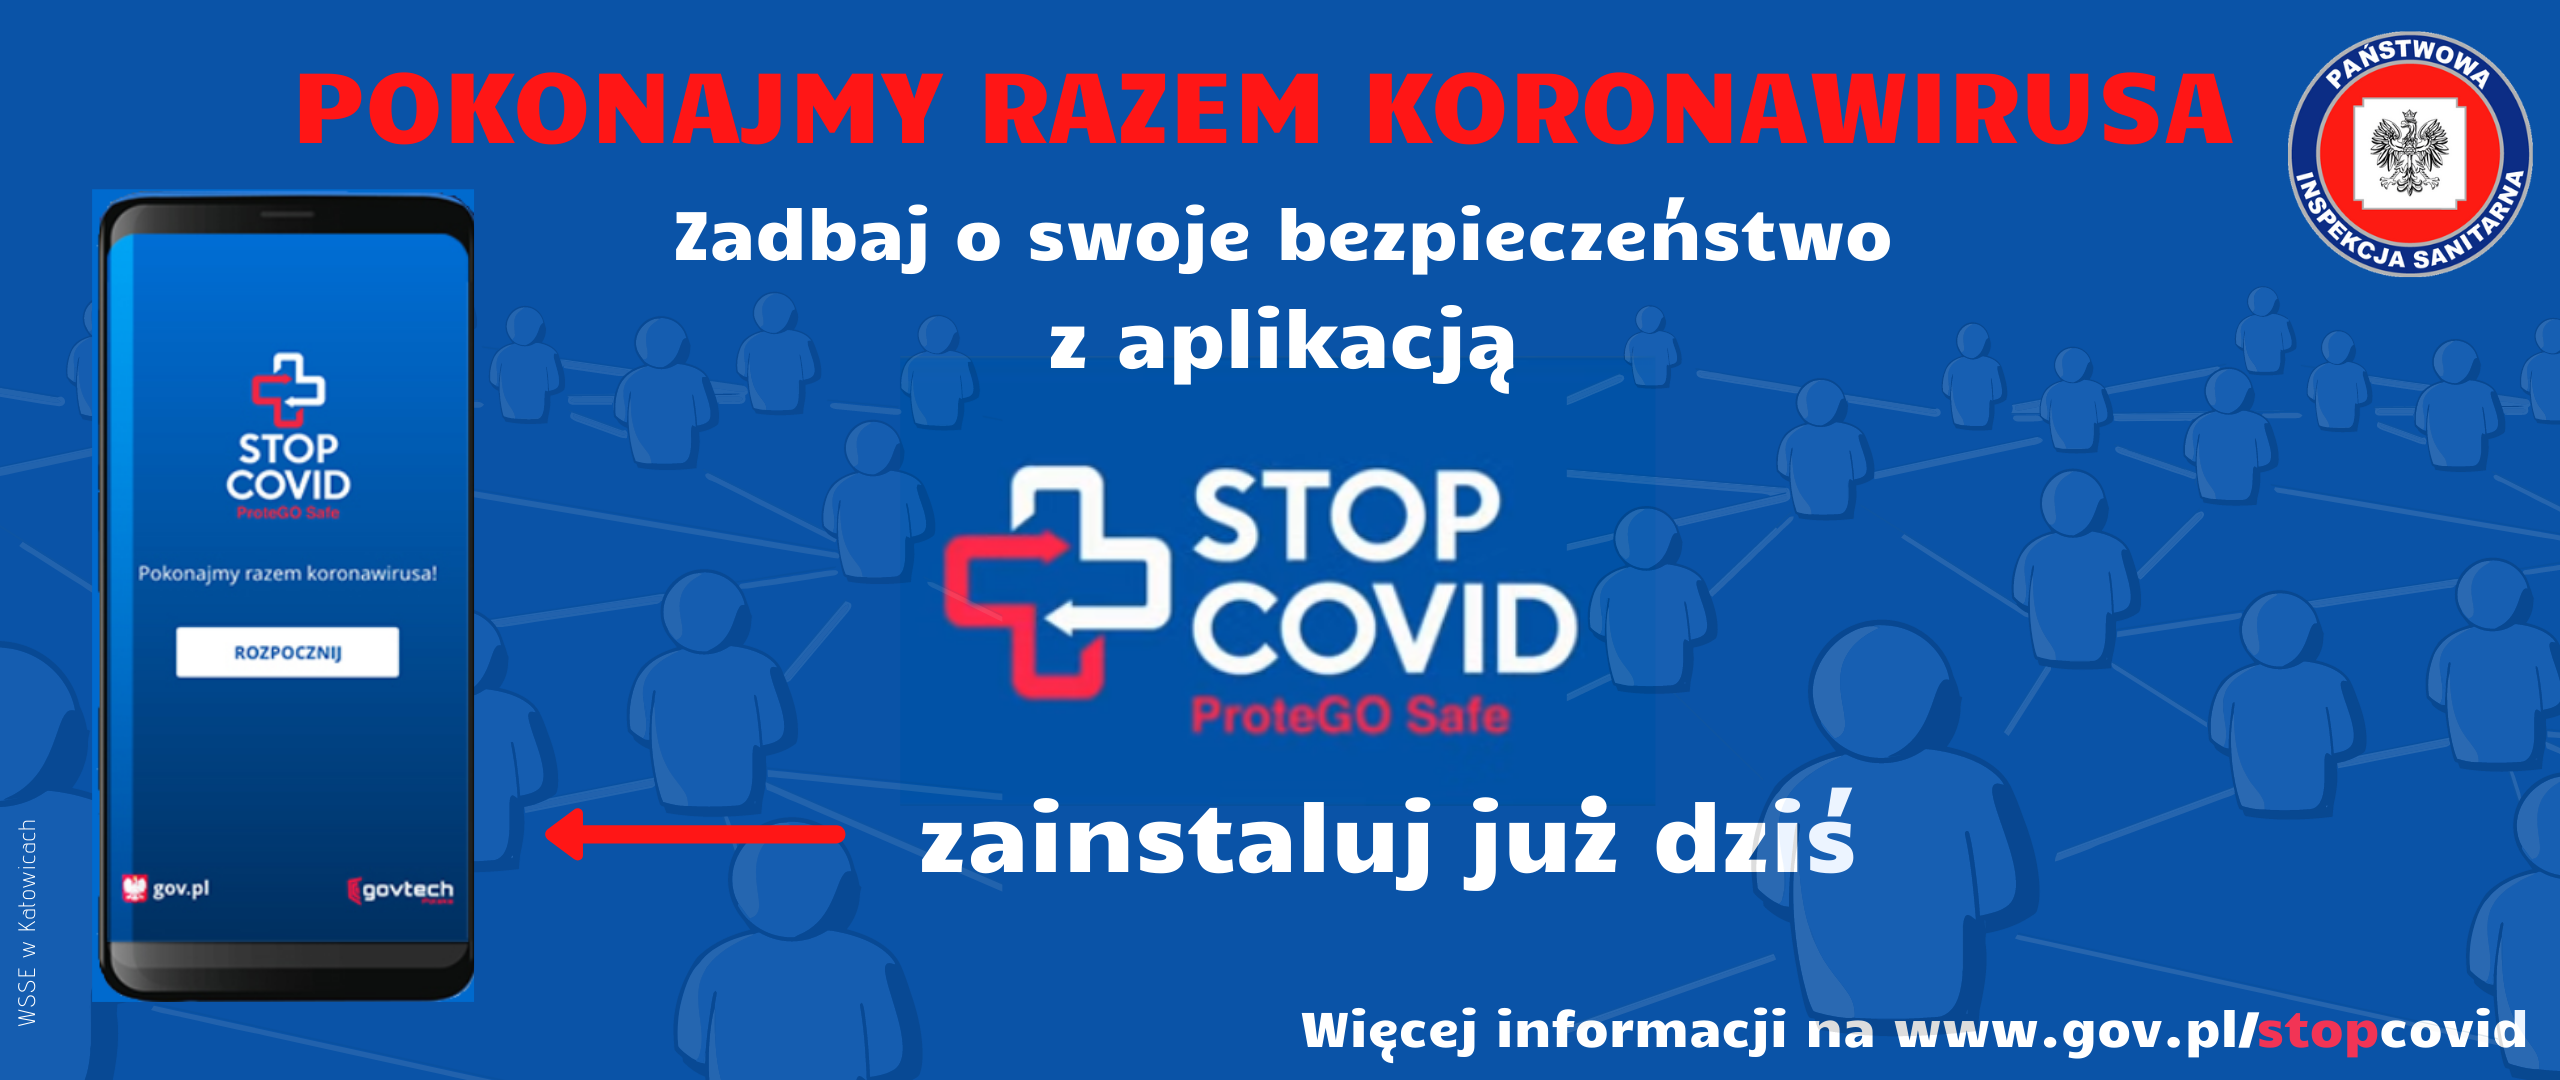 STOP COVID to aplikacja, która skutecznie pomaga w ograniczaniu rozprzestrzeniania się koronawirusa